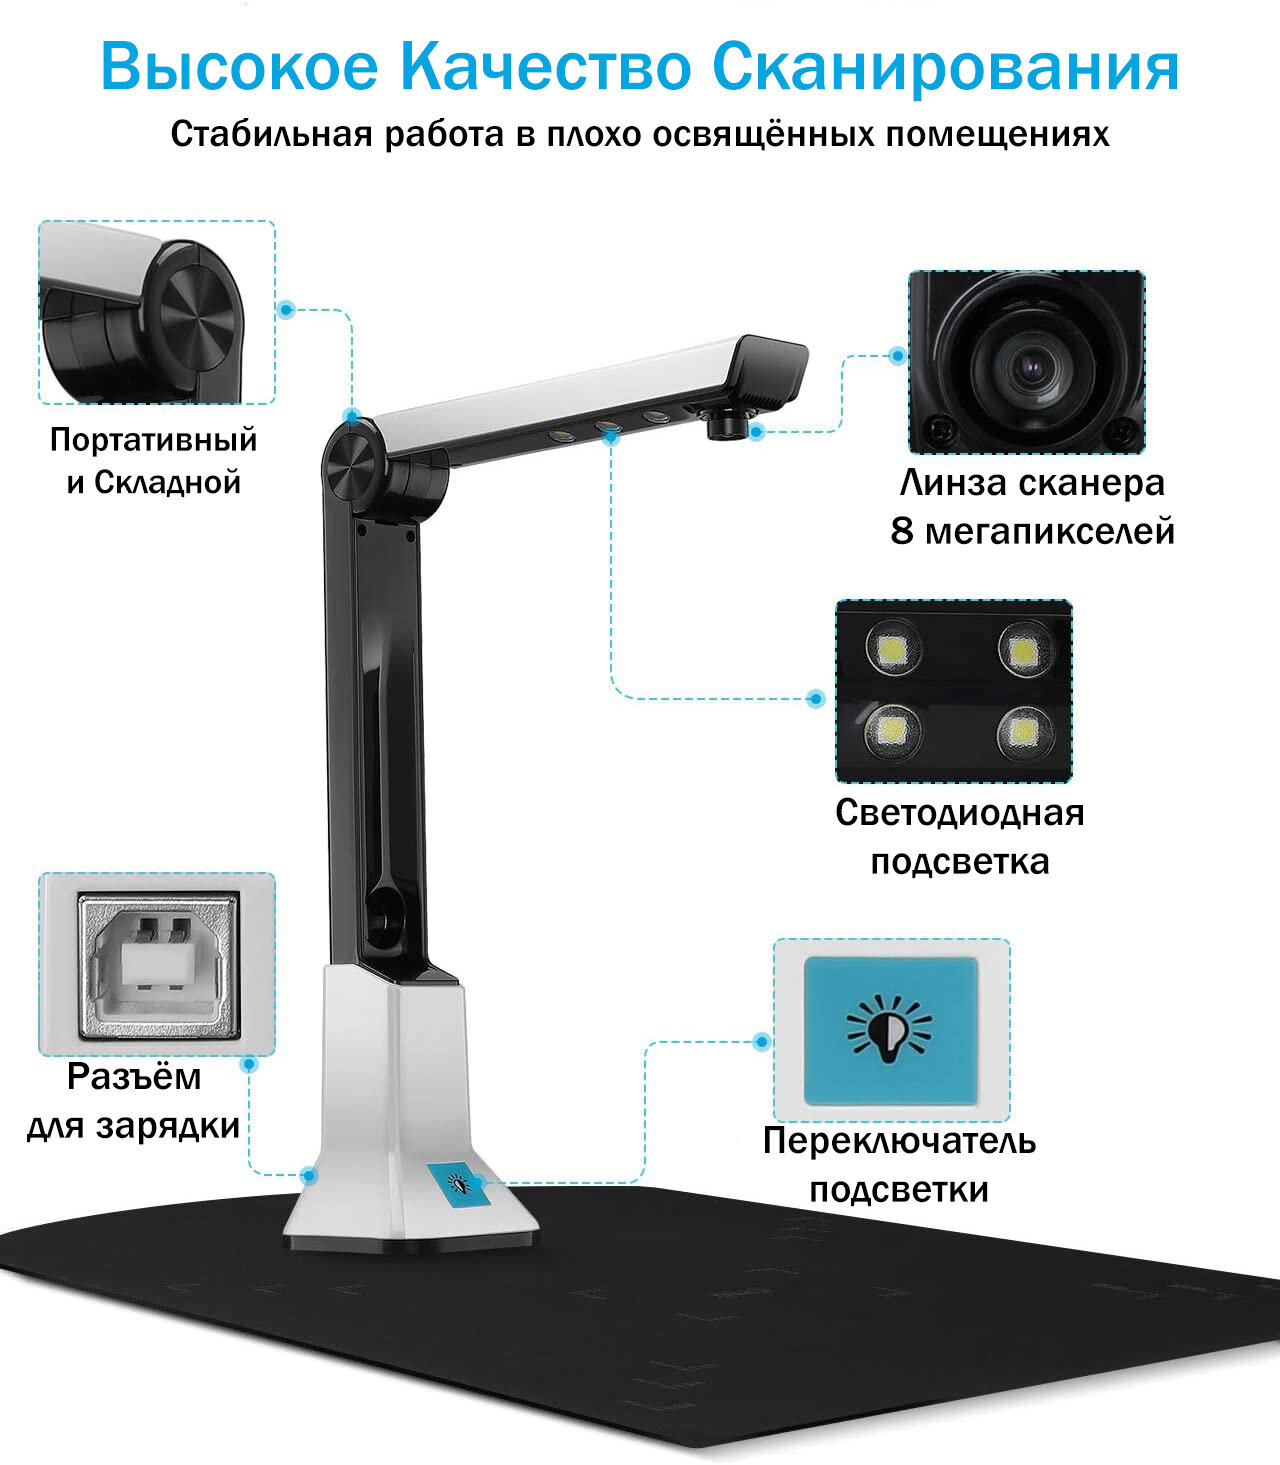 Многофункциональная документ-камера для школ и учреждений ANYSMART 8Мп